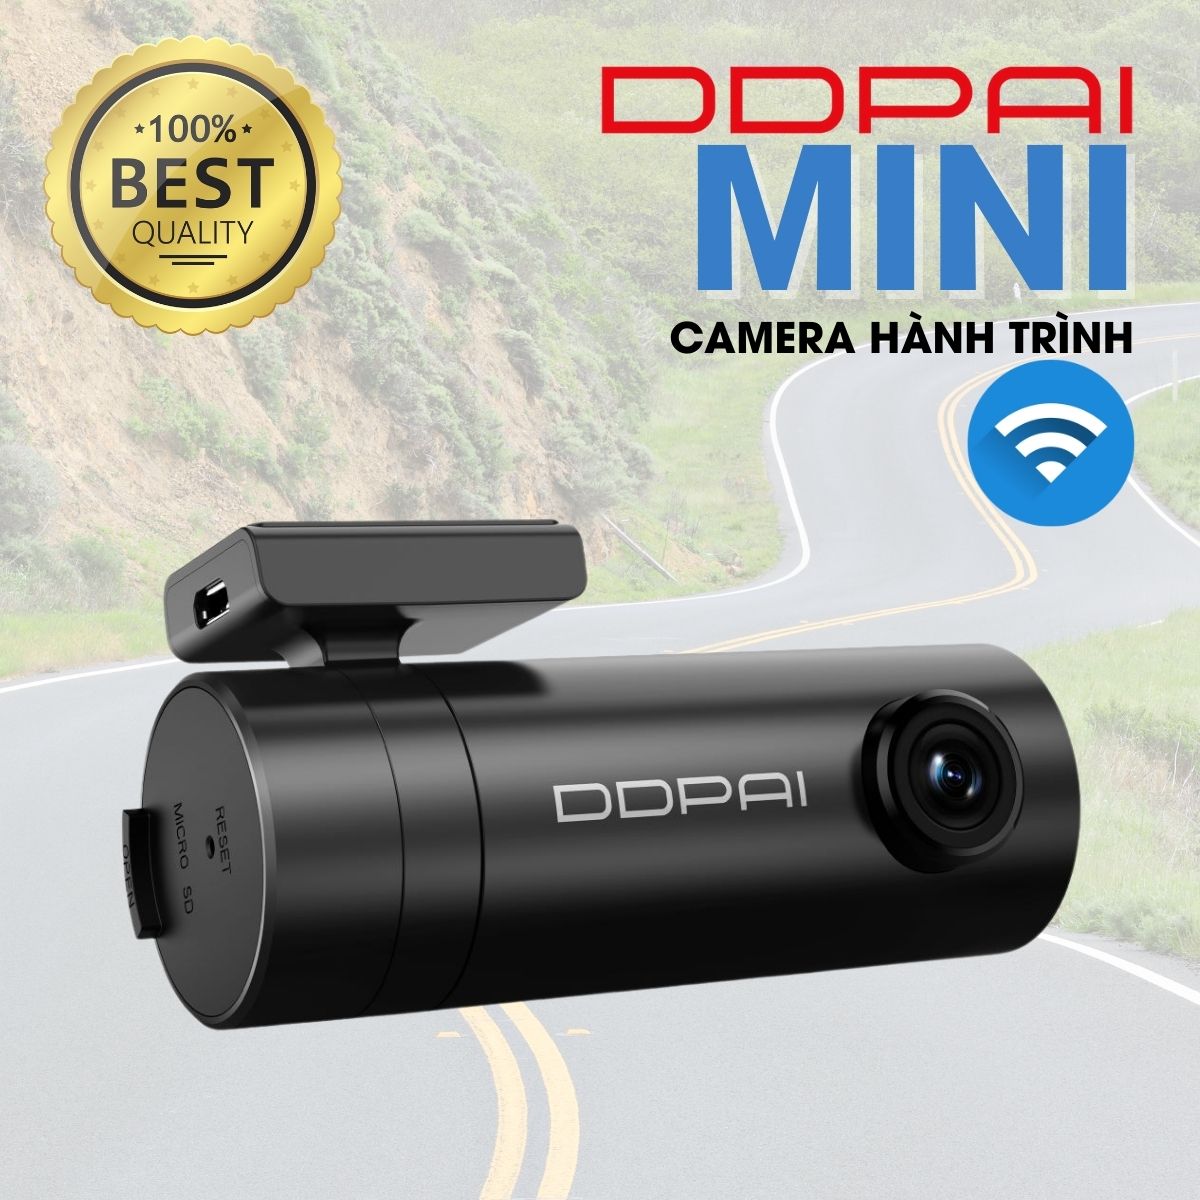 Camera hành trình DDPai Mini 1080P giám sát đỗ xe 24h